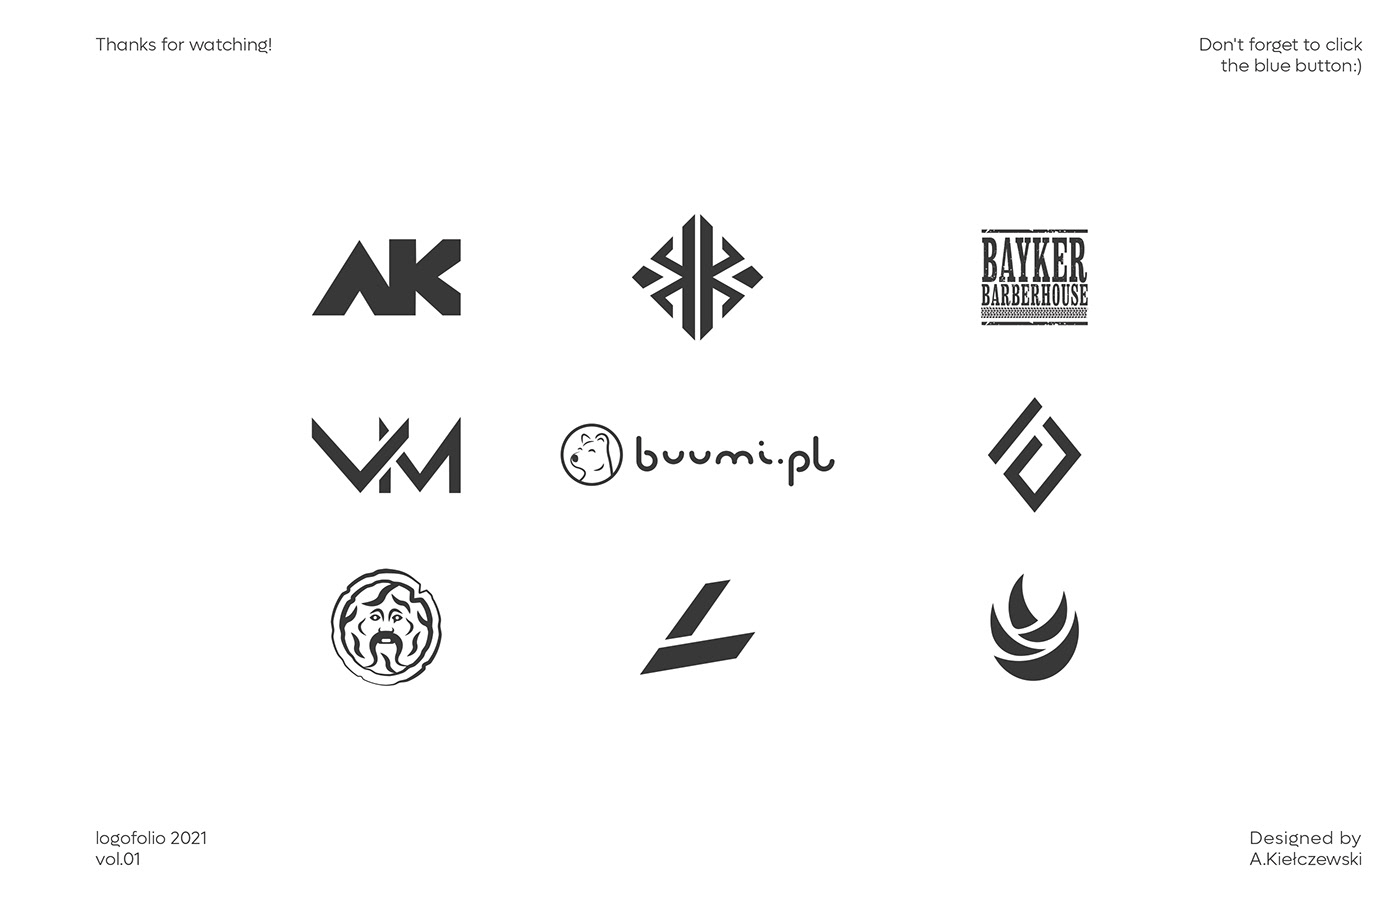 logo logofolio logos Logos & Marks marks brand branding  graphic design  Logotype mark